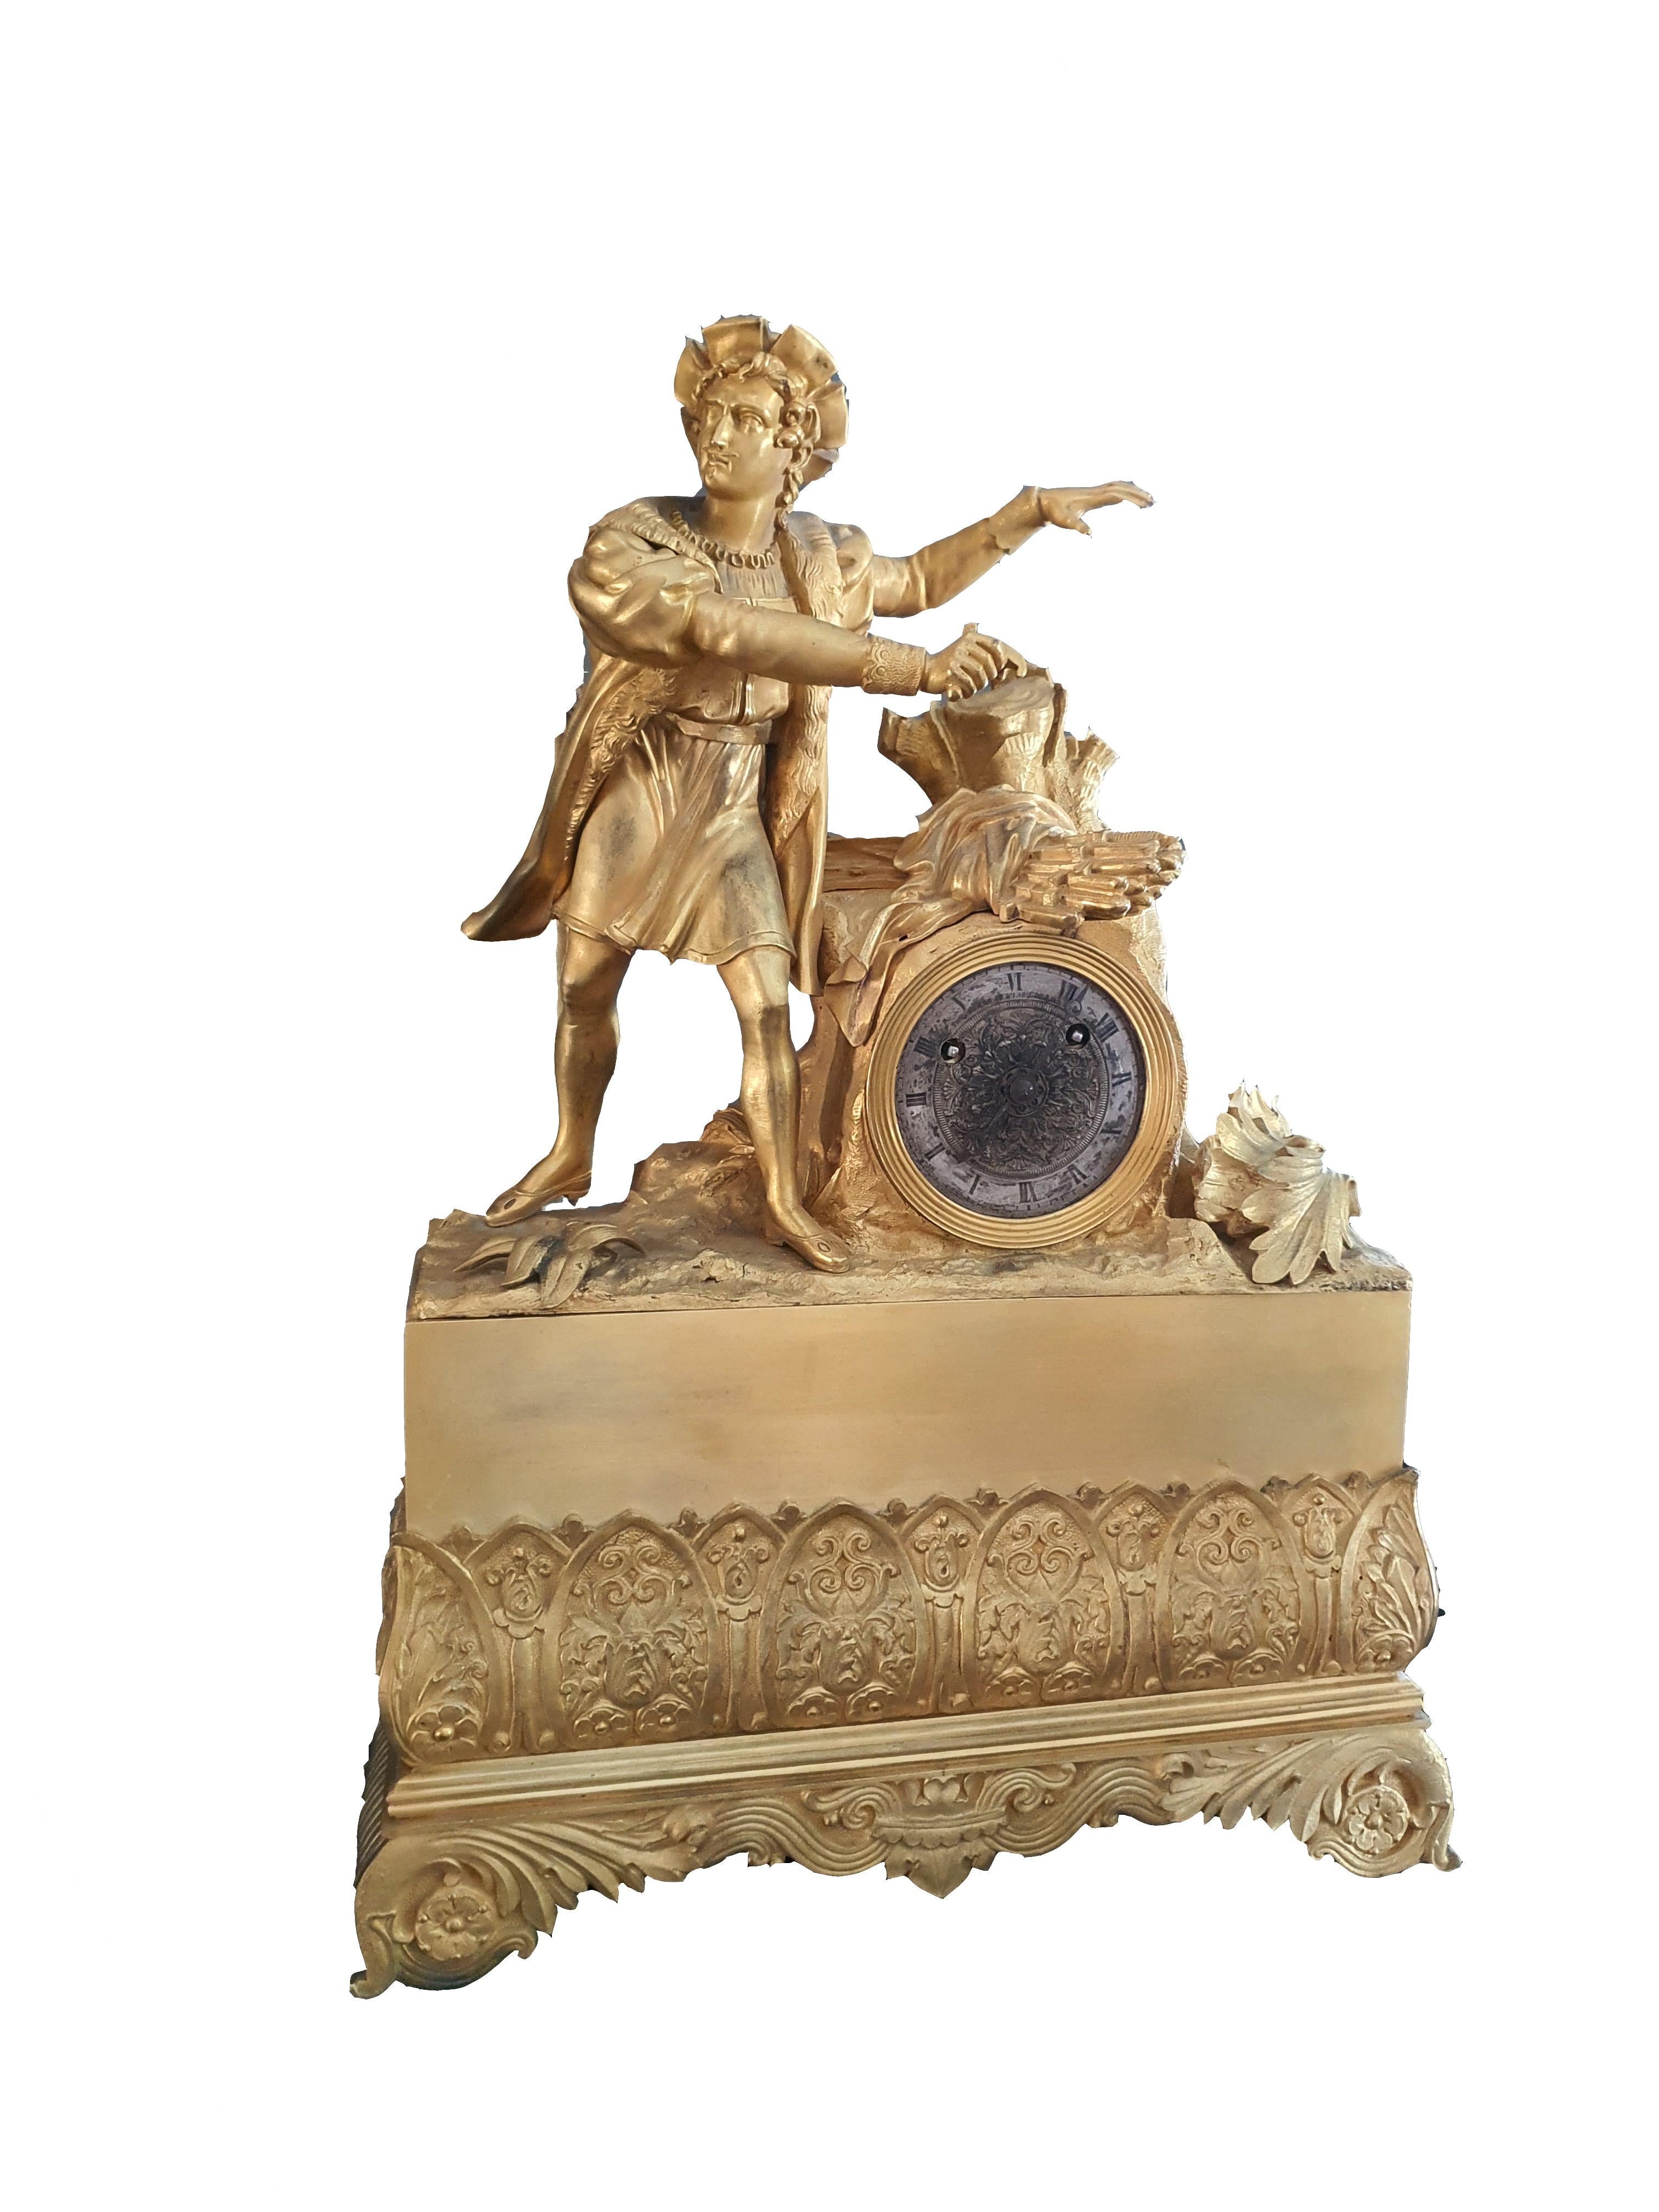 Elégante horloge de table en bronze finement ciselé et doré. Figure parisienne au sommet de l'horloge.